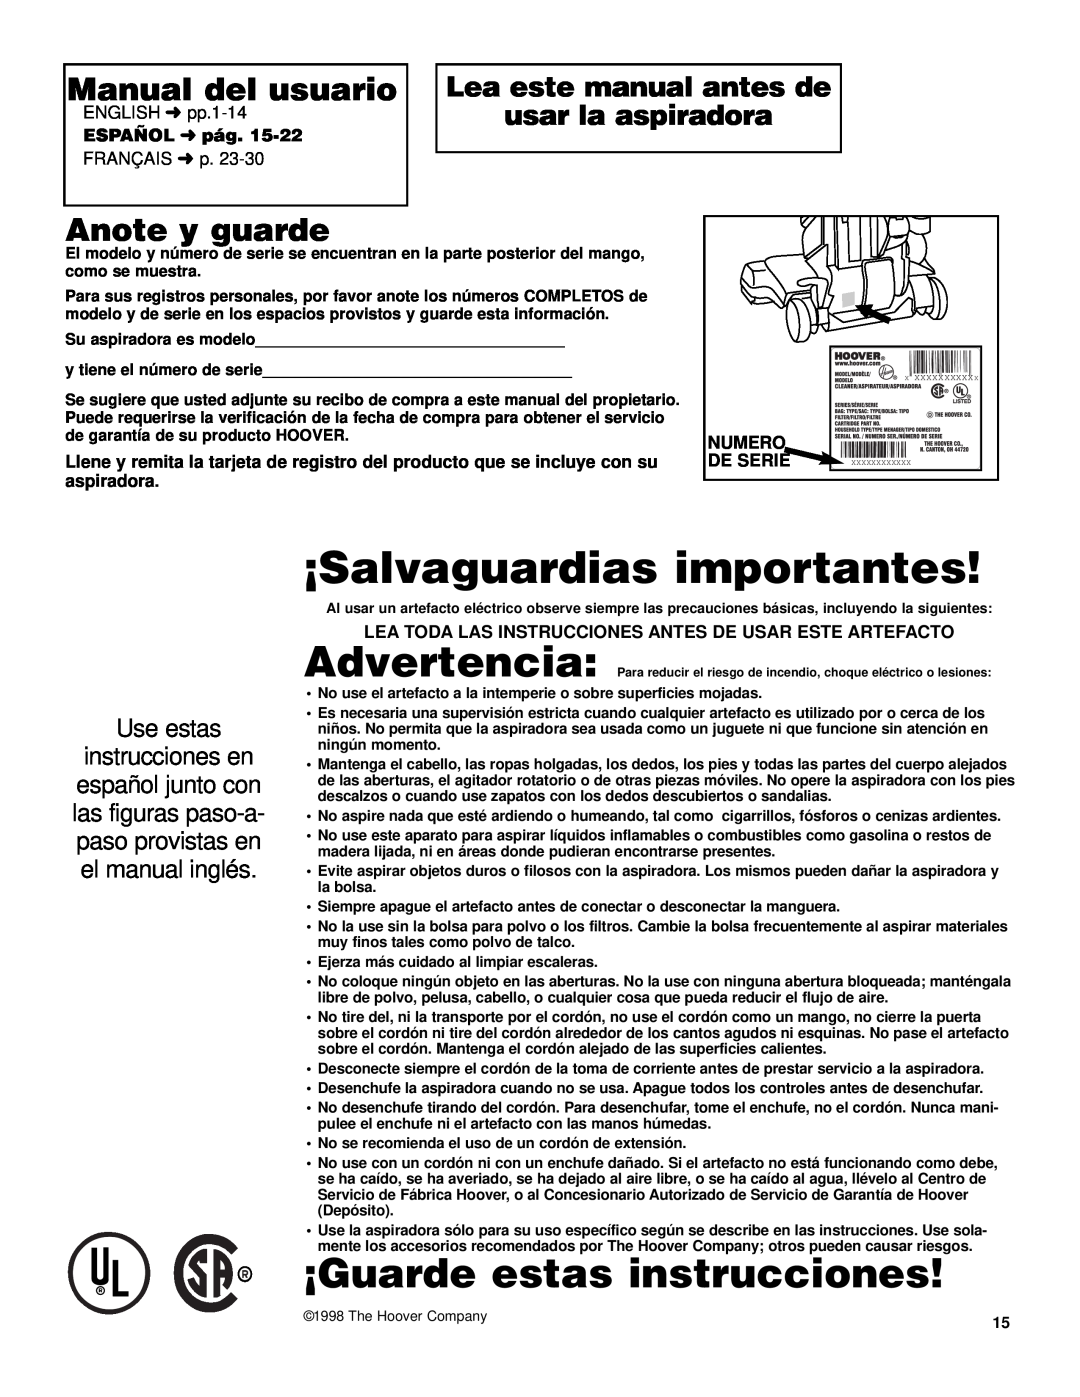 Hoover UH70600 ¡Salvaguardias importantes, ¡Guarde estas instrucciones, Manual del usuario, Anote y guarde, ESPAÑOL pág 